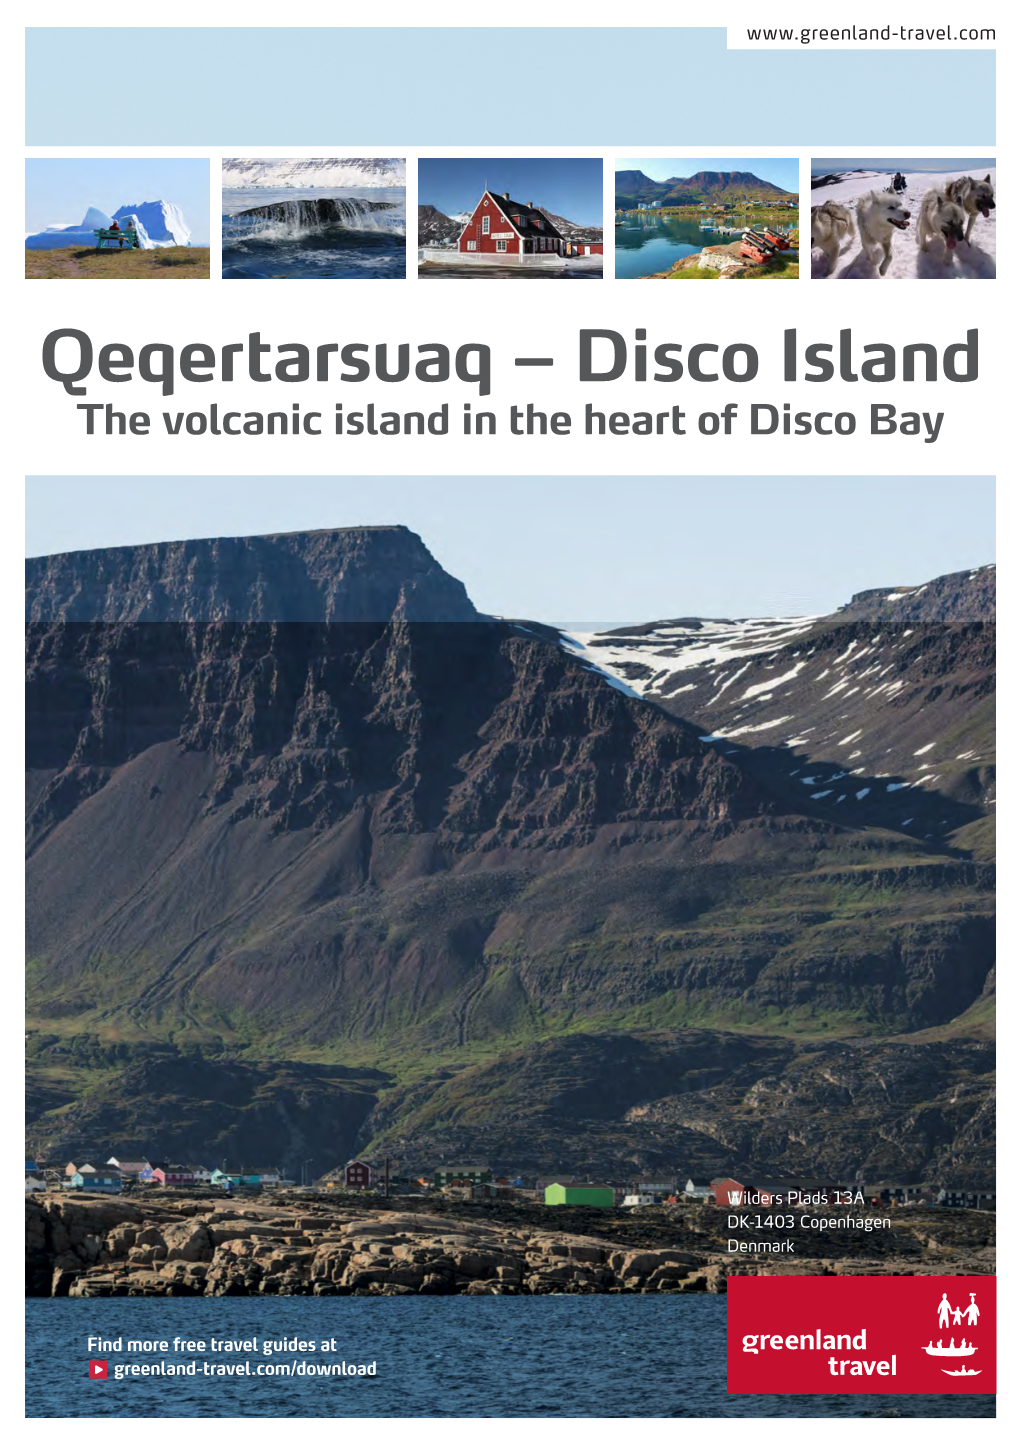 Qeqertarsuaq – Disco Island the Volcanic Island in the Heart of Disco Bay